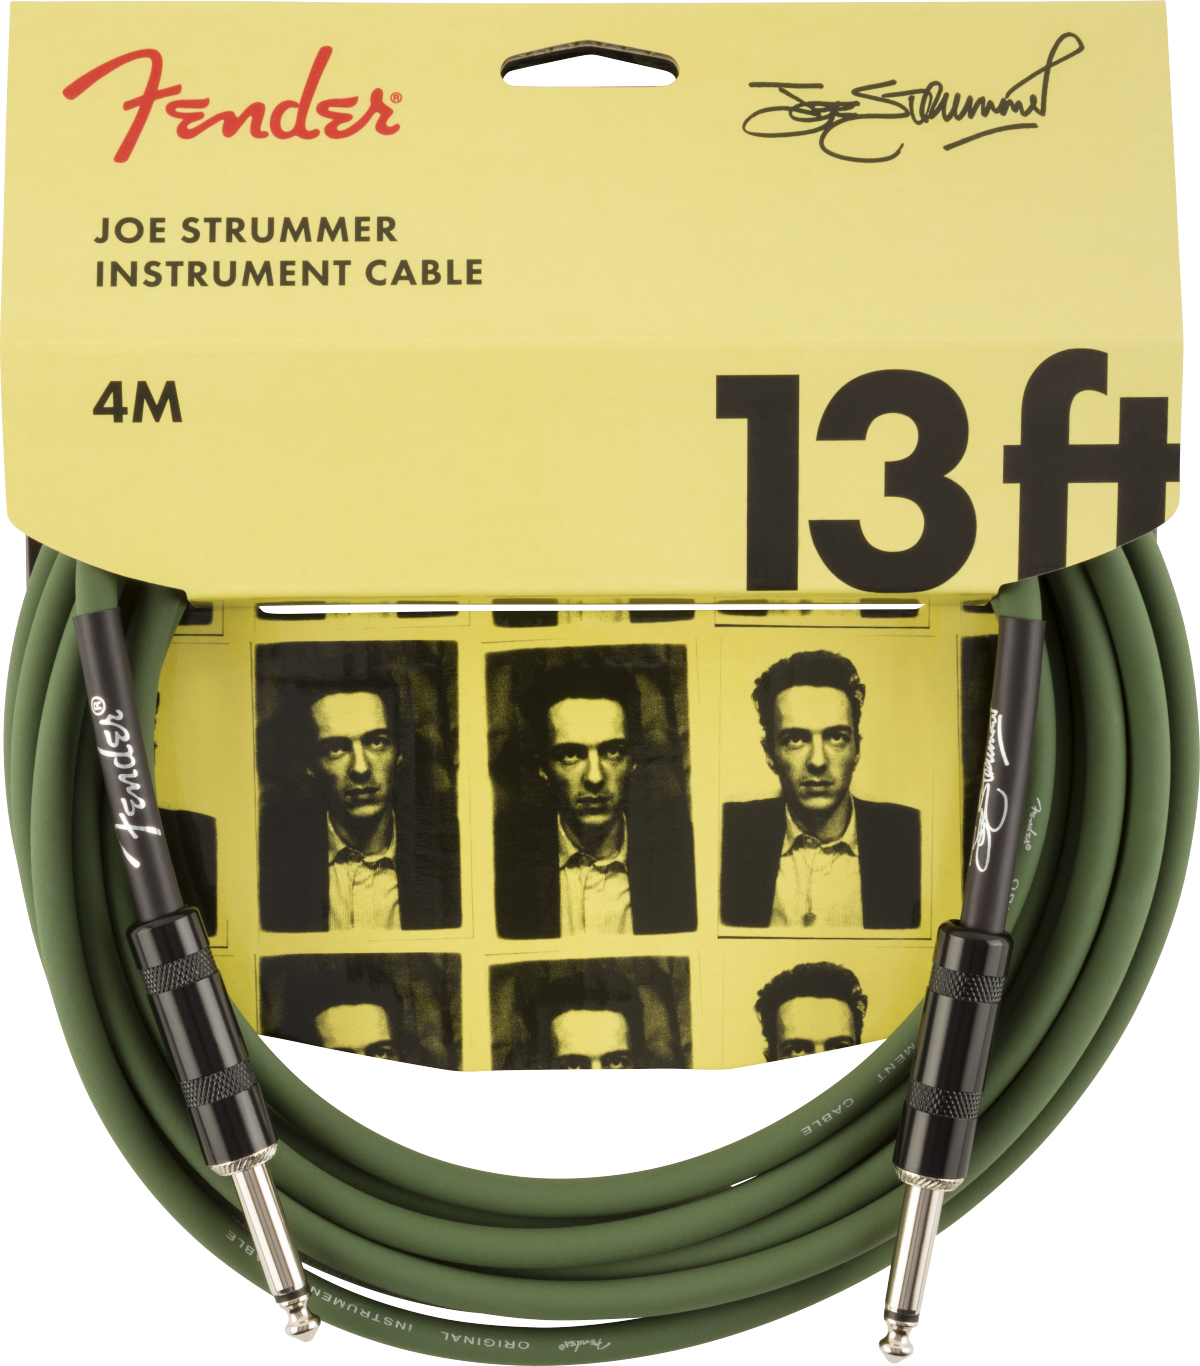 Fender Joe Strummer Pro Instrument Cable Signature Droit Droit 13ft 3.9m Drab Green - Kabel - Main picture